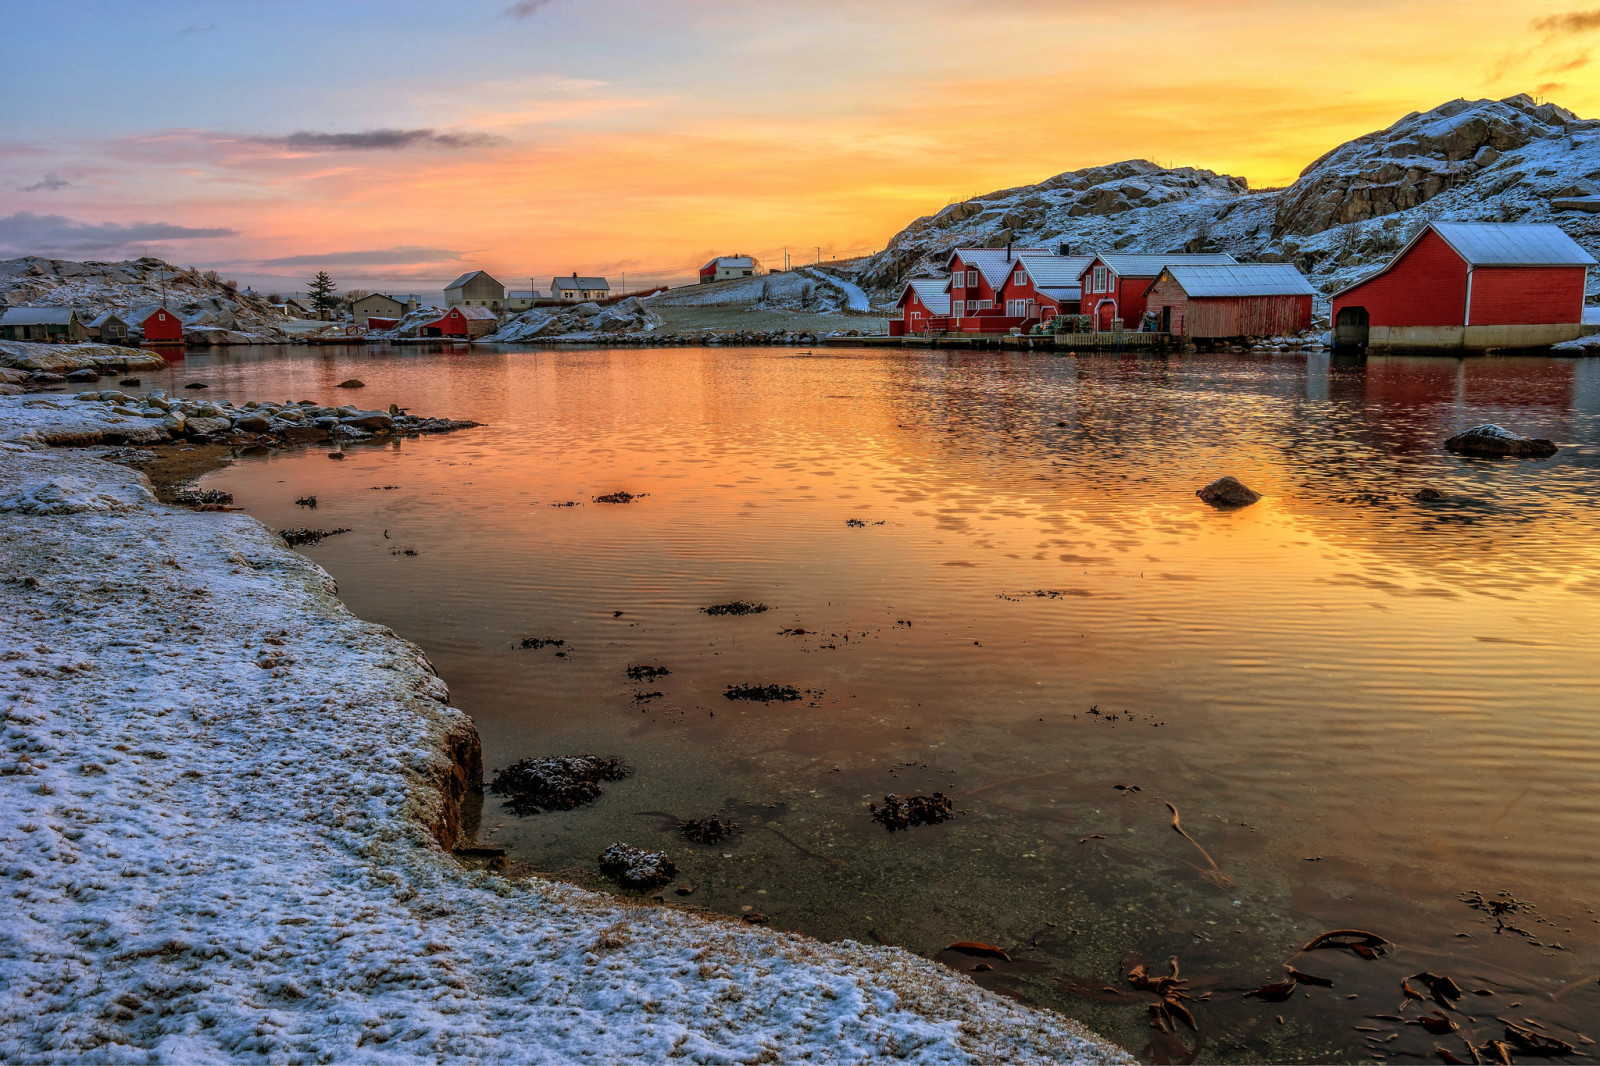 눈, 하늘, 집, 저녁, 호수, 산, 노르웨이, 마을